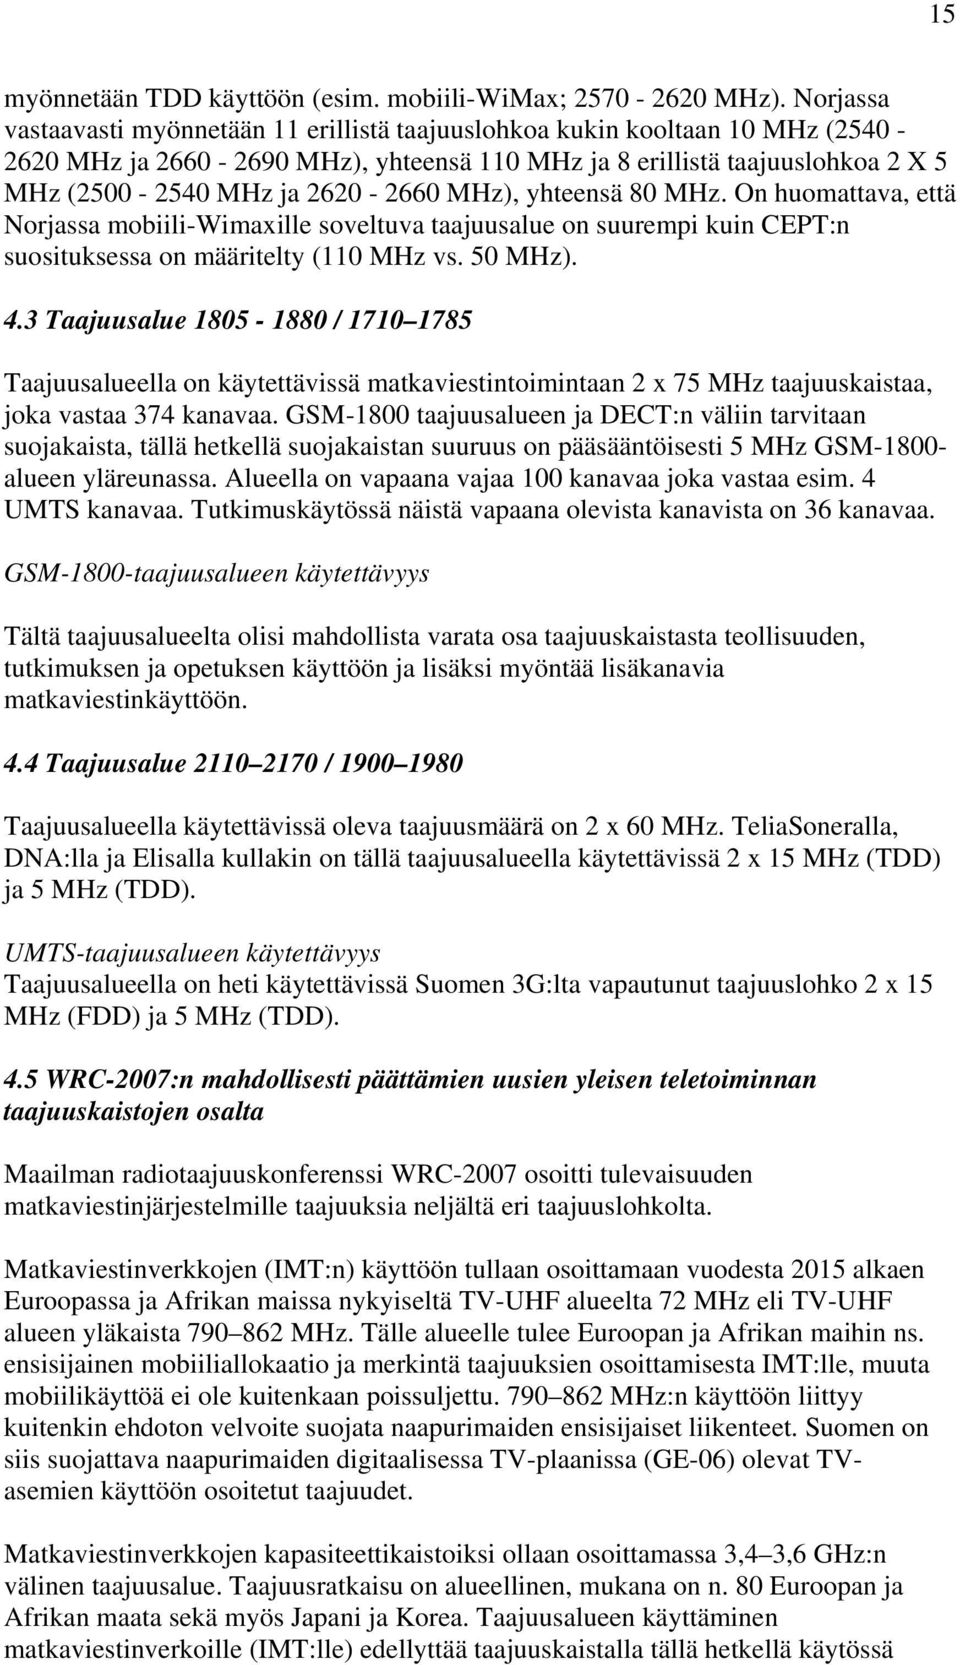 MHz), yhteensä 80 MHz. On huomattava, että Norjassa mobiili-wimaxille soveltuva taajuusalue on suurempi kuin CEPT:n suosituksessa on määritelty (110 MHz vs. 50 MHz). 4.